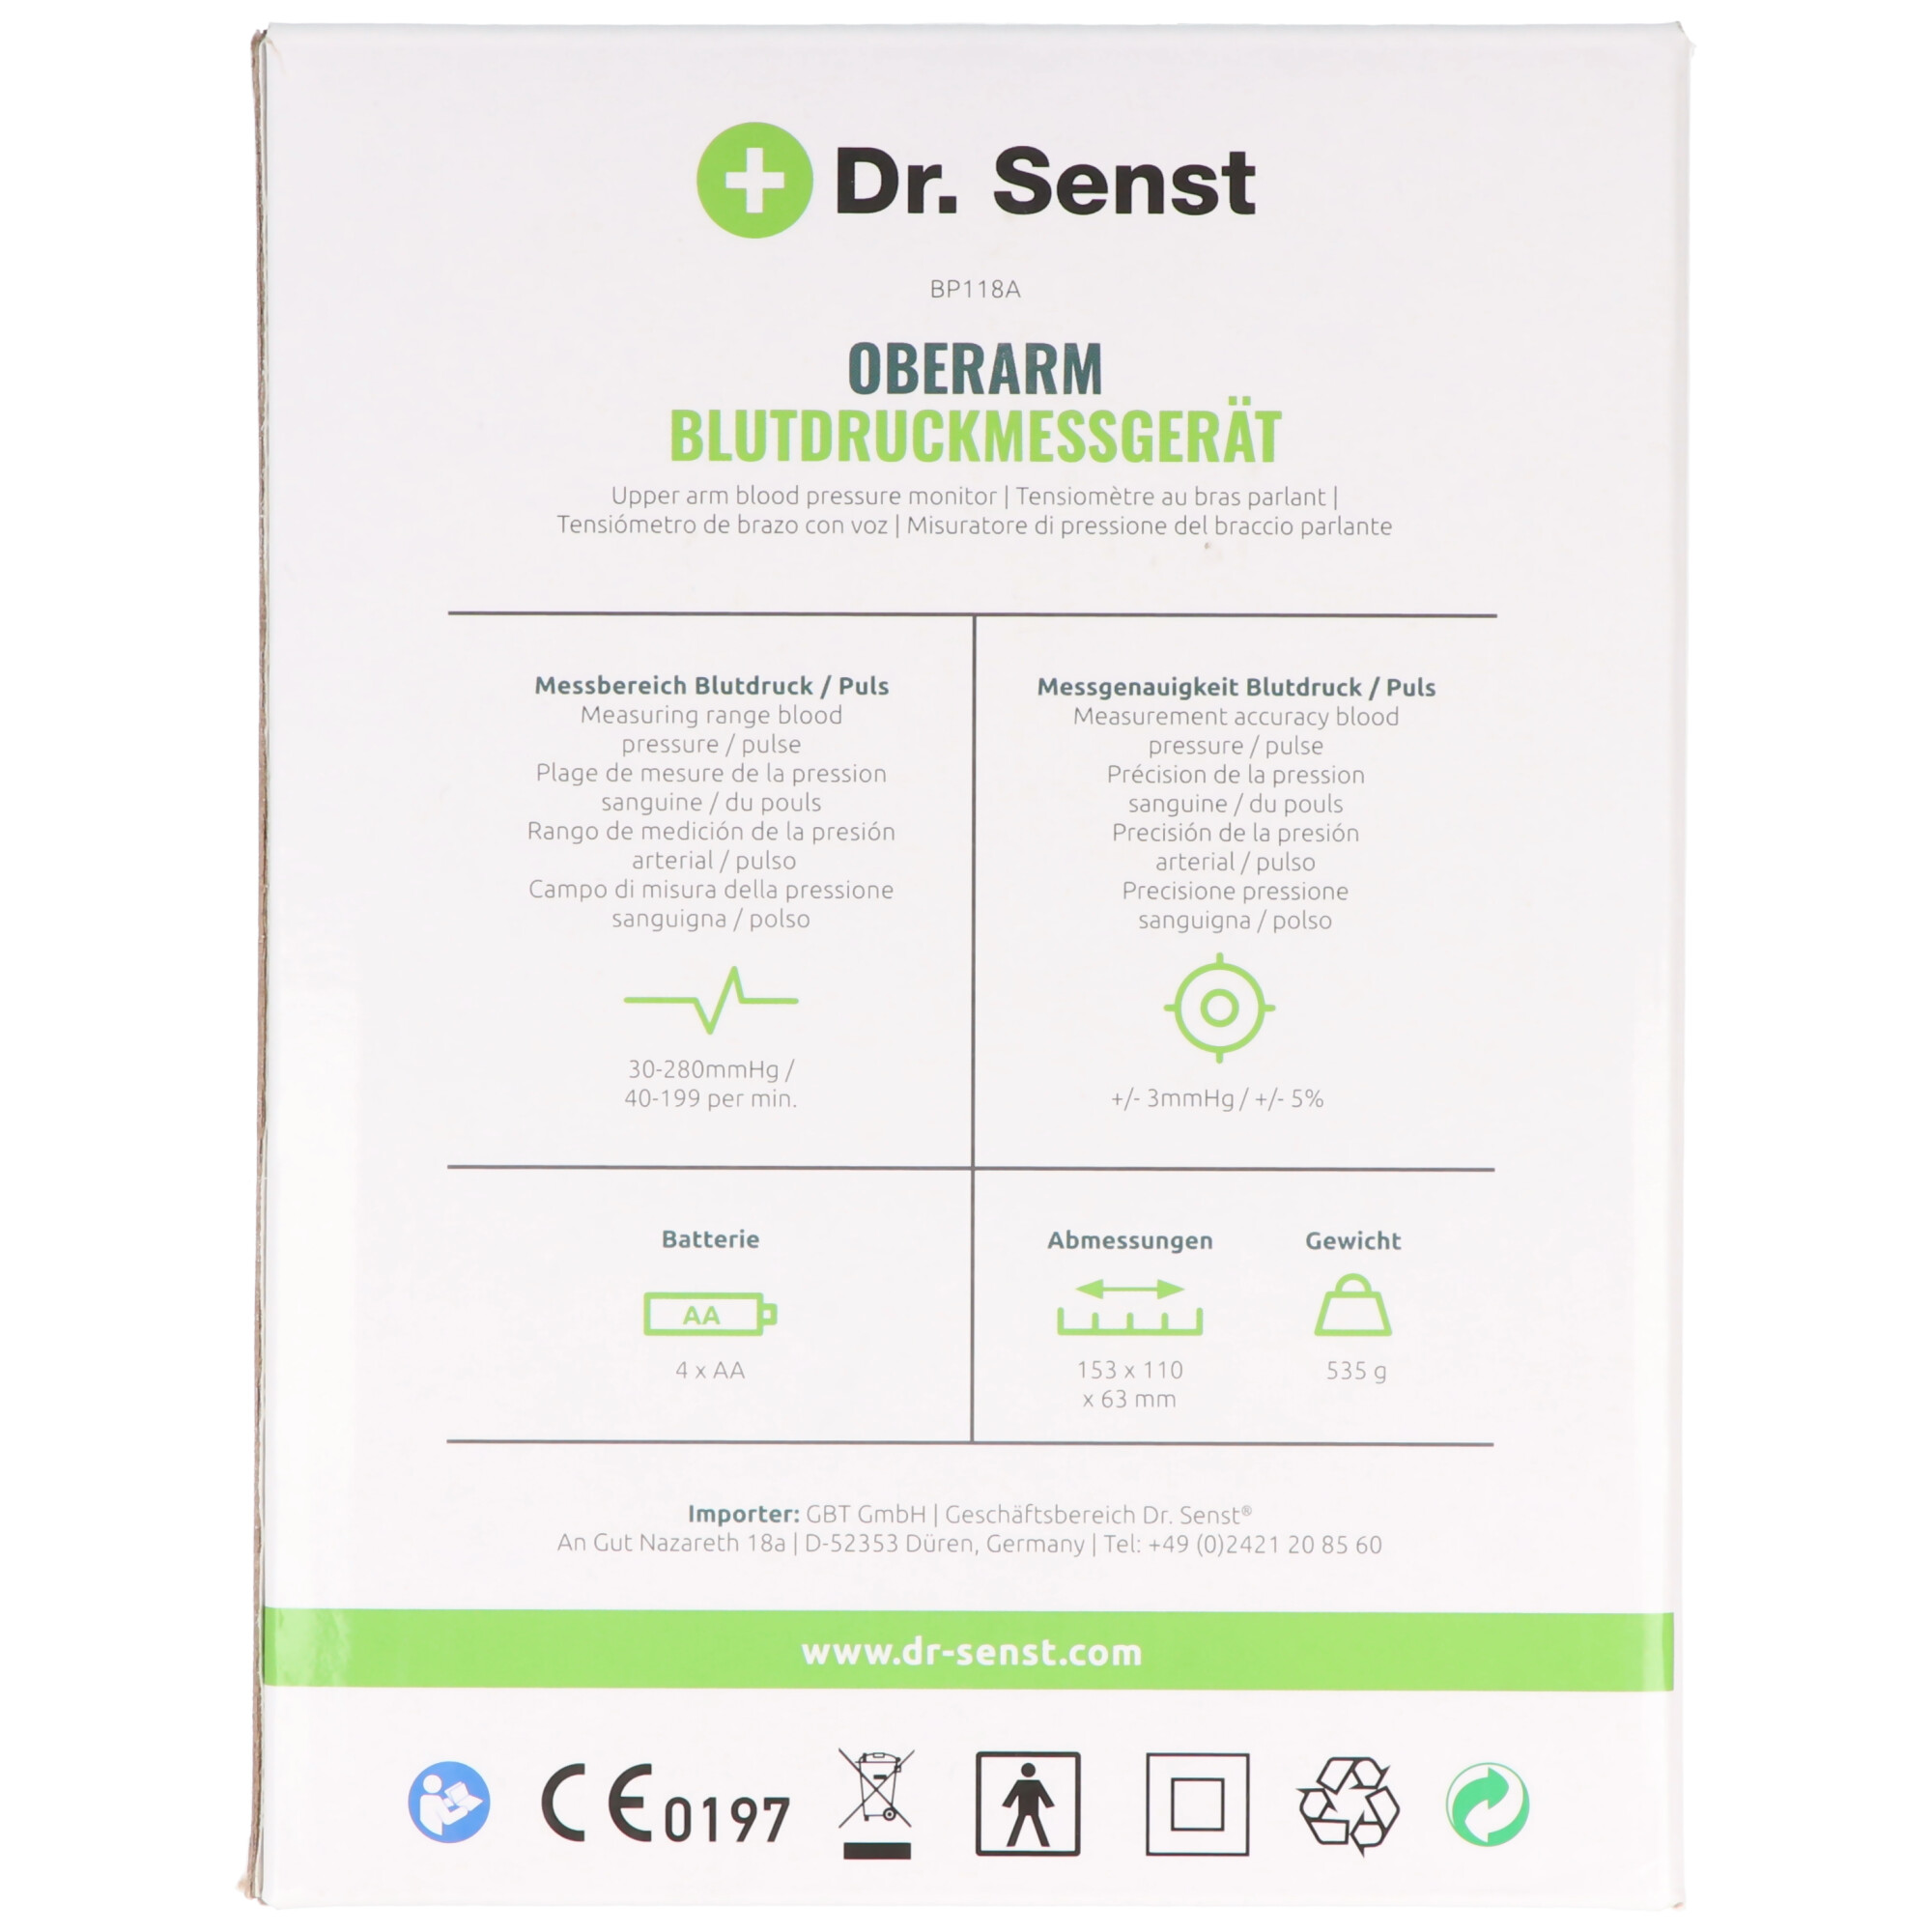 Dr. Senst® Oberarm-Blutdruckmessgerät BP118A mit Sprachausgabe